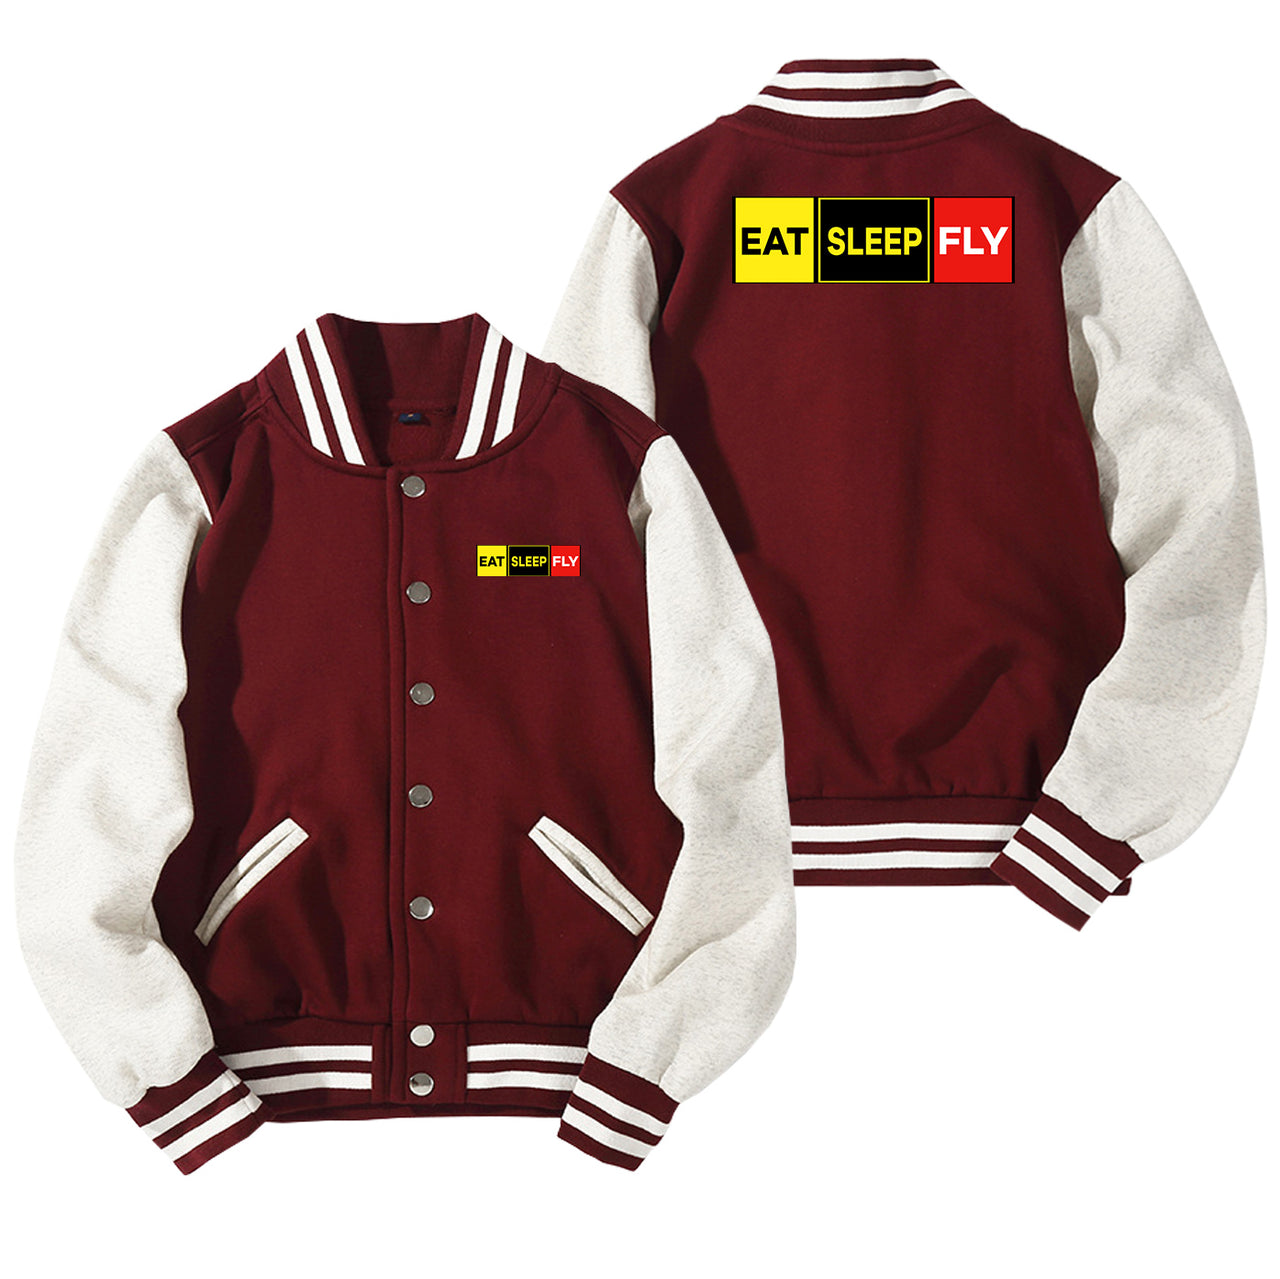 Eat Sleep Fly (Colourful) Designed Baseball Style Jackets